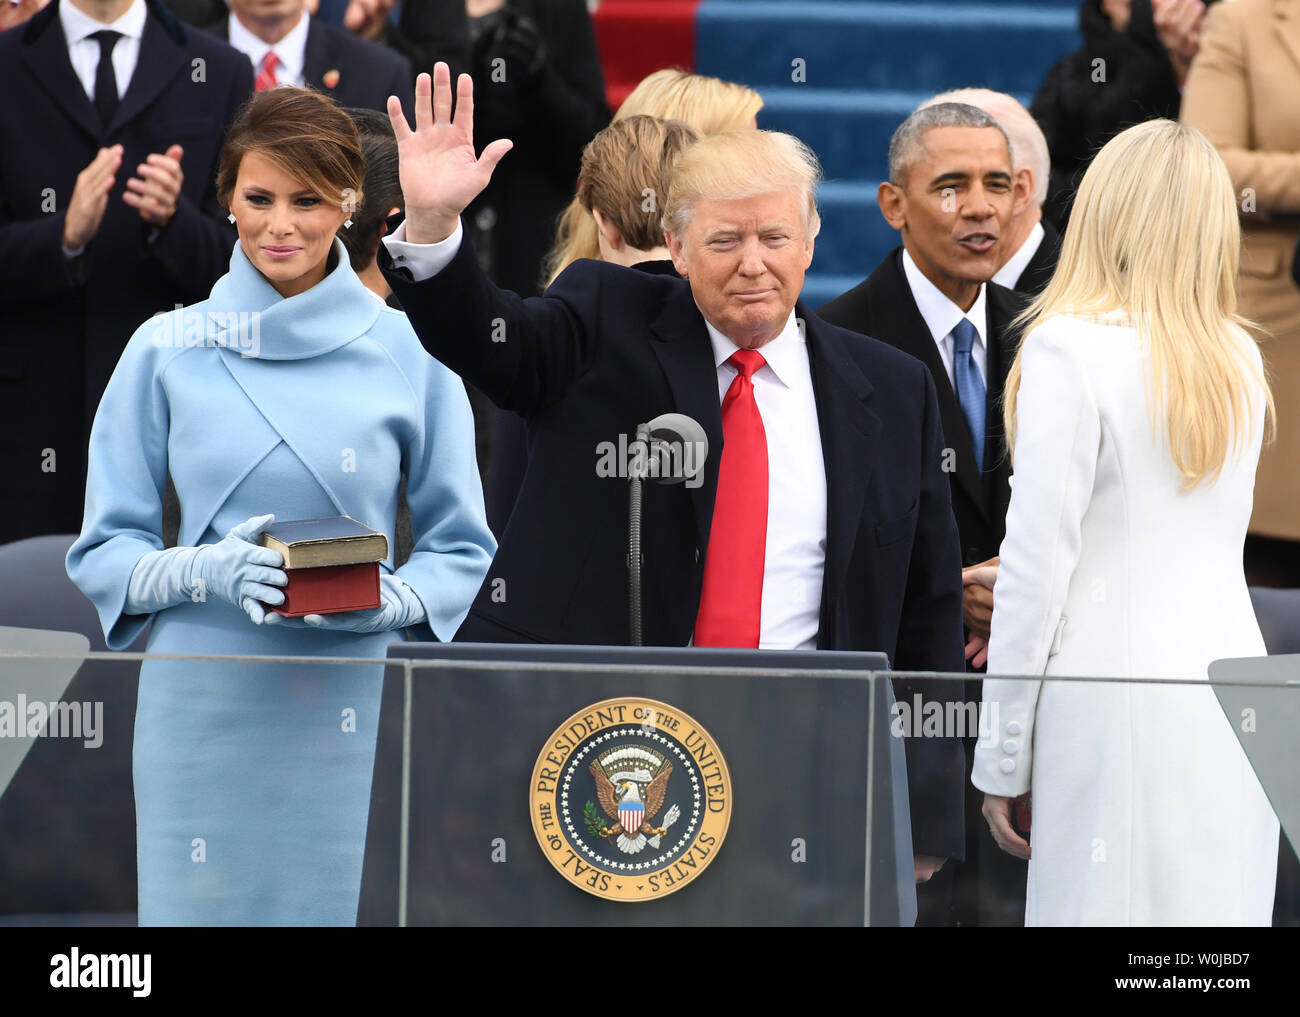 Präsident Donald J. Trumpf Wellen nach dem Amtseid bei der Einweihung am 20 Januar, 2017 in Washington, D.C. Trump wurde der 45. Präsident der Vereinigten Staaten. Foto von Pat Benic/UPI Stockfoto